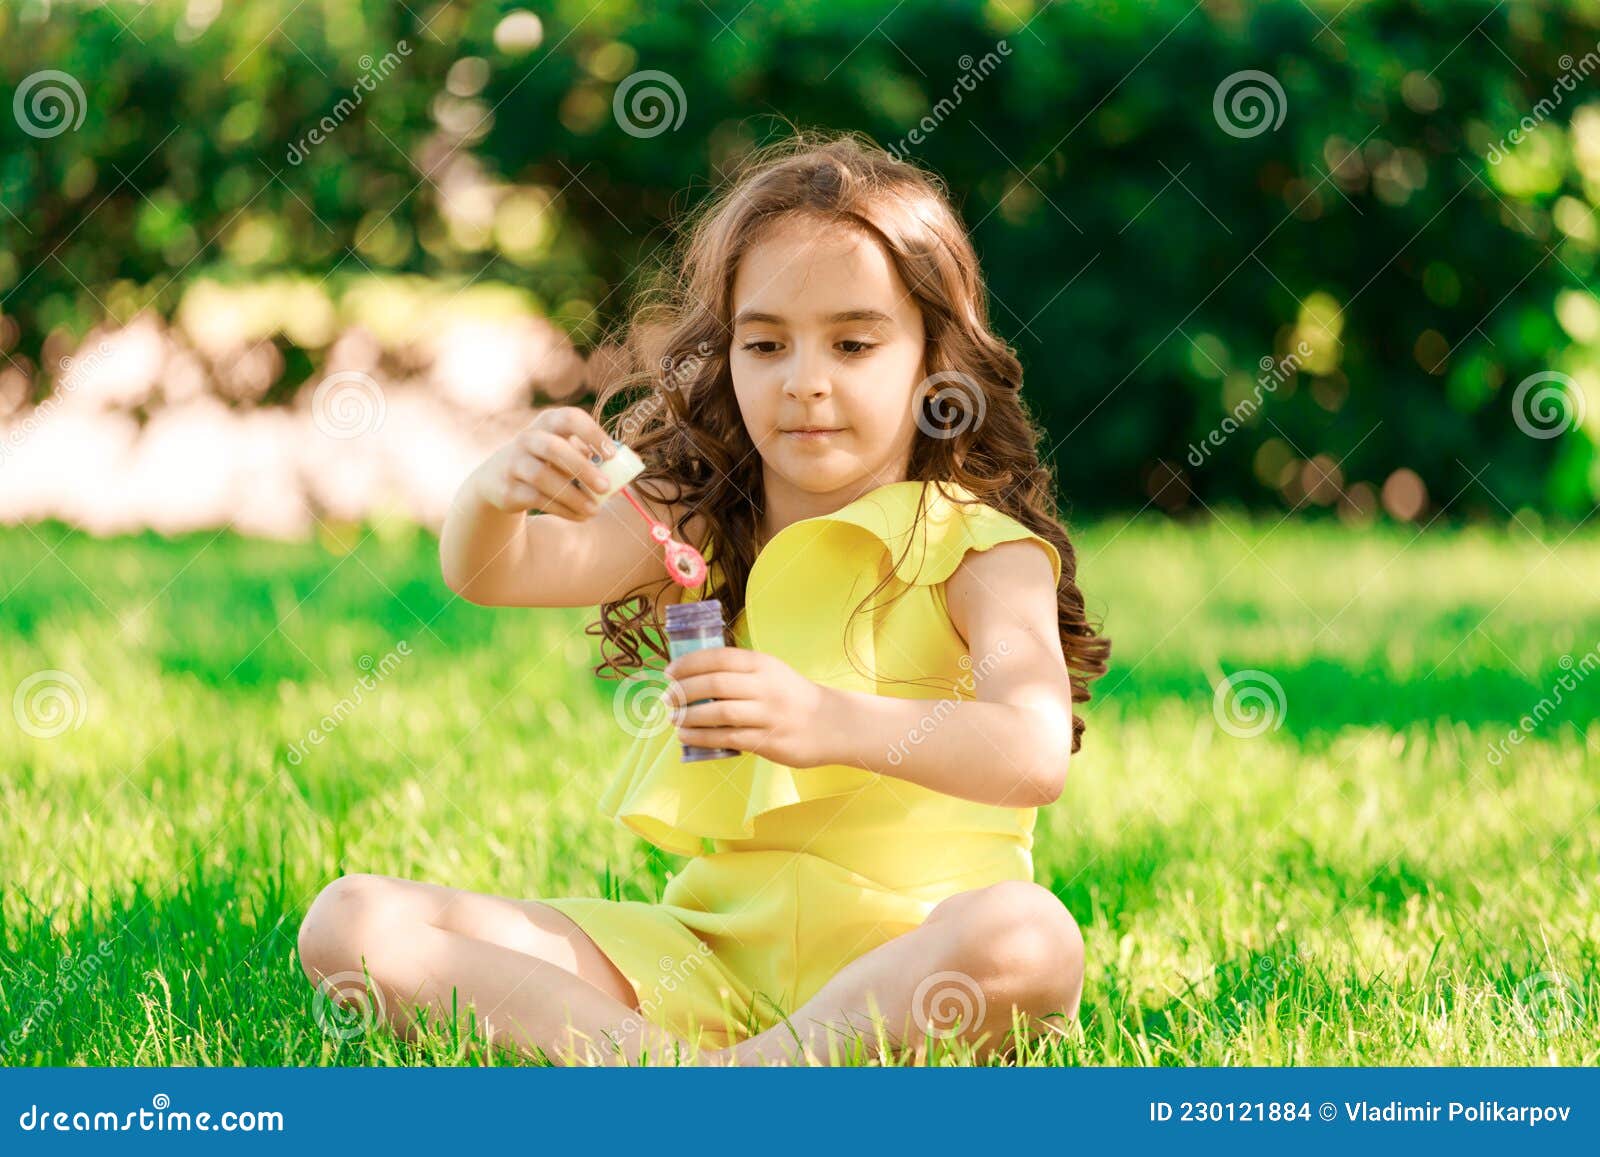 坐在绿草地上吹泡泡的快乐美女图片素材-编号14691046-图行天下